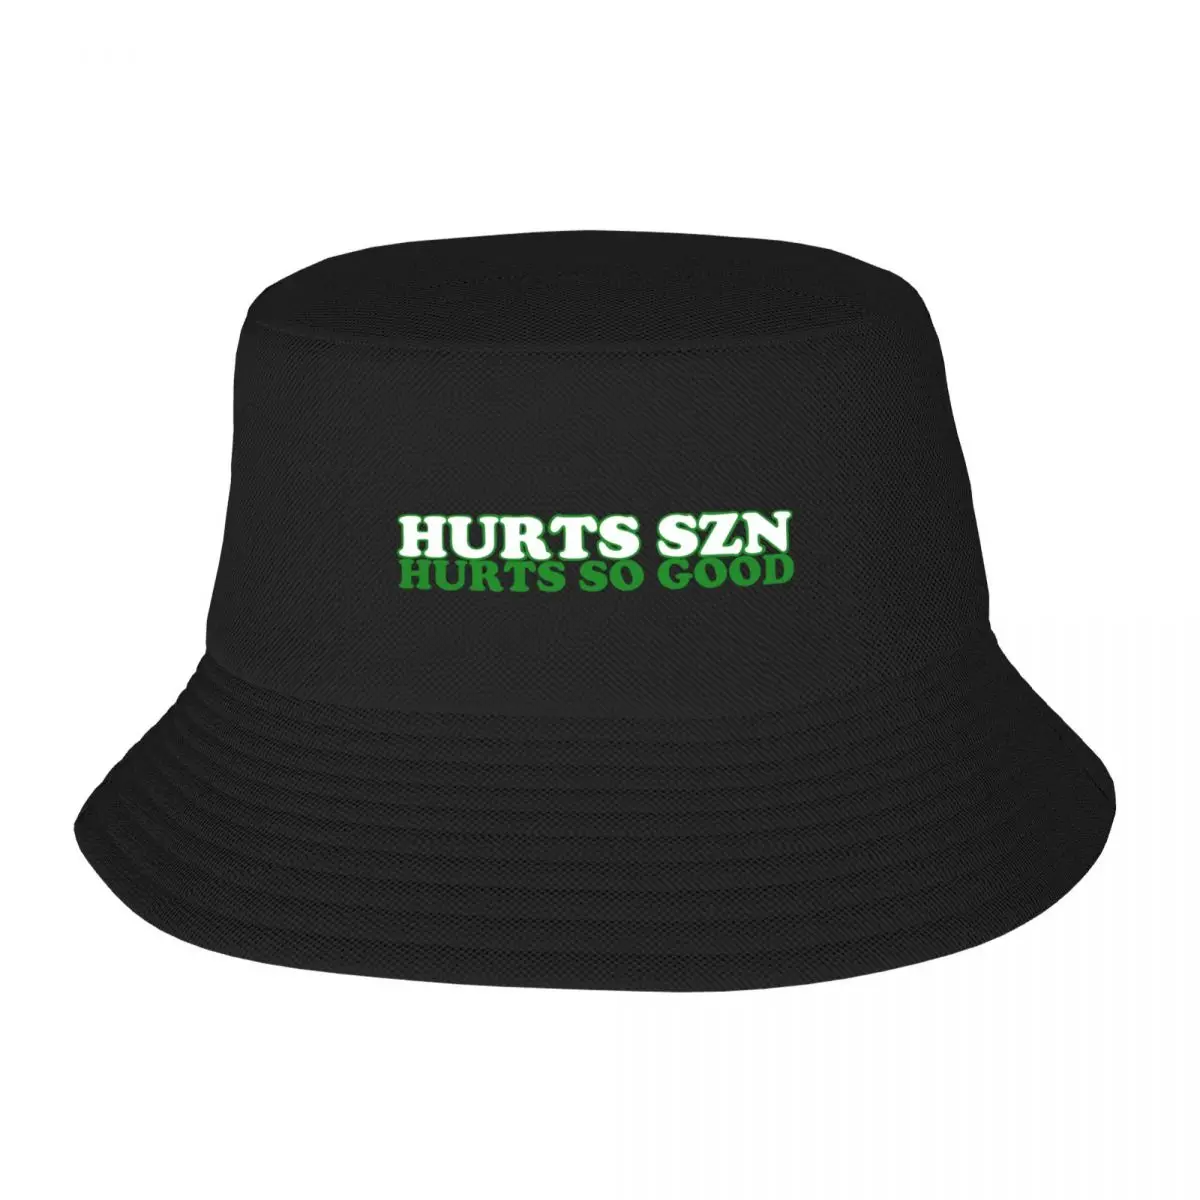 

New Hurts SZN, Hurts So Good Bucket Hat Luxury Brand derby hat Golf Hat Women Men's